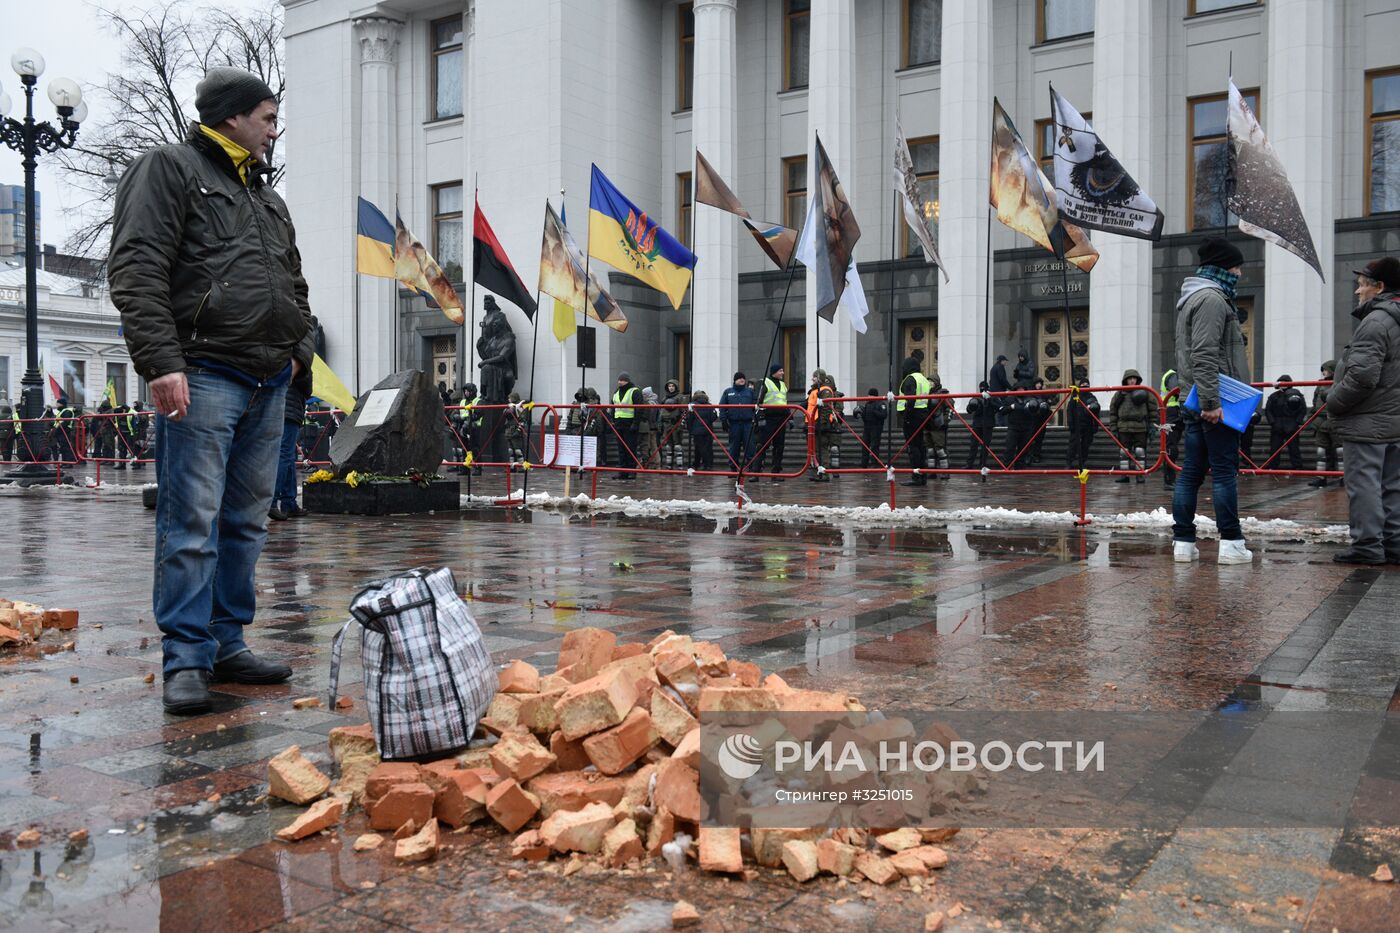 Сторонники М. Саакашвили разбили палаточный городок в центре Киева